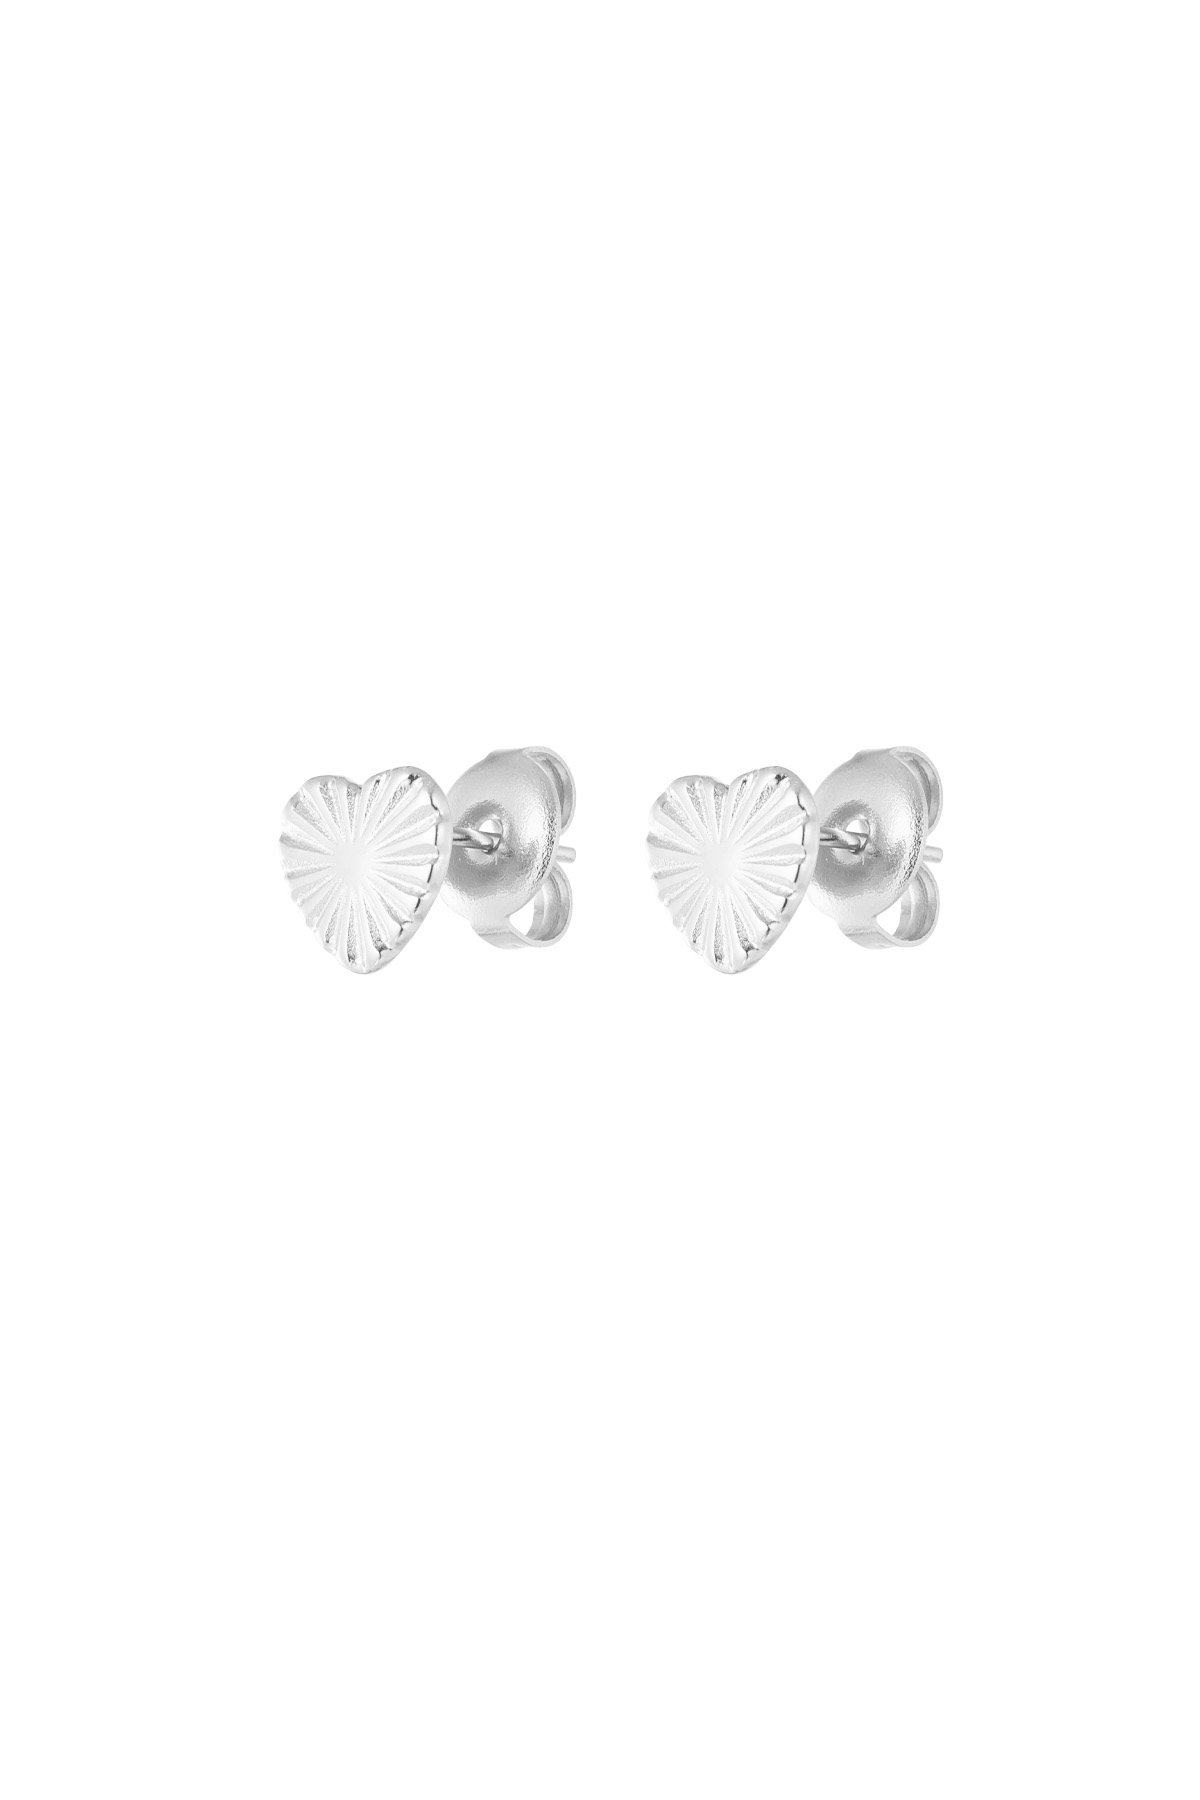 Herzförmige Ohrringe mit Muster – Silber h5 